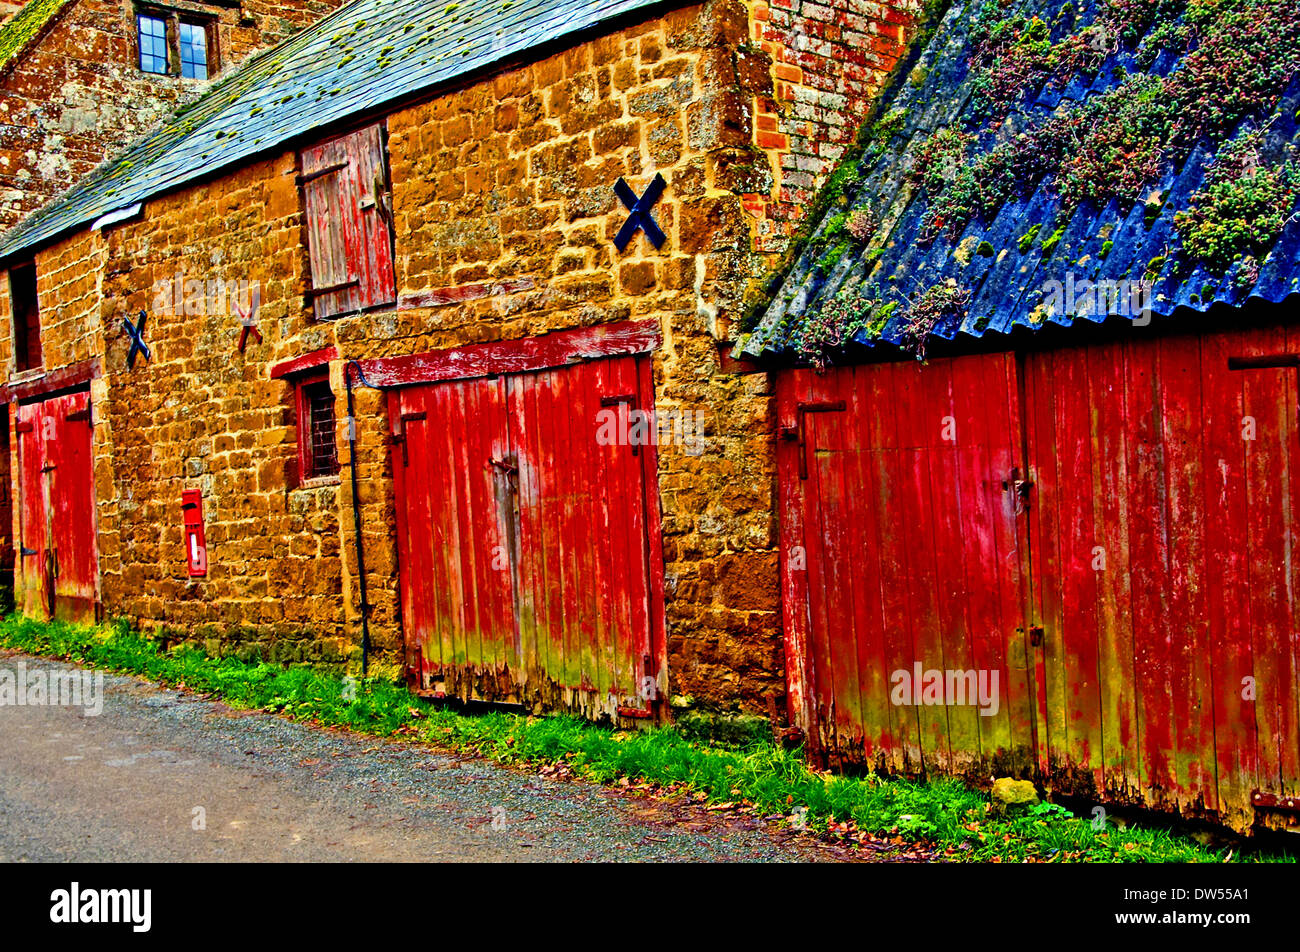 Edifici in pietra e fienile con sbiadito vernice rossa su porte. Foto Stock